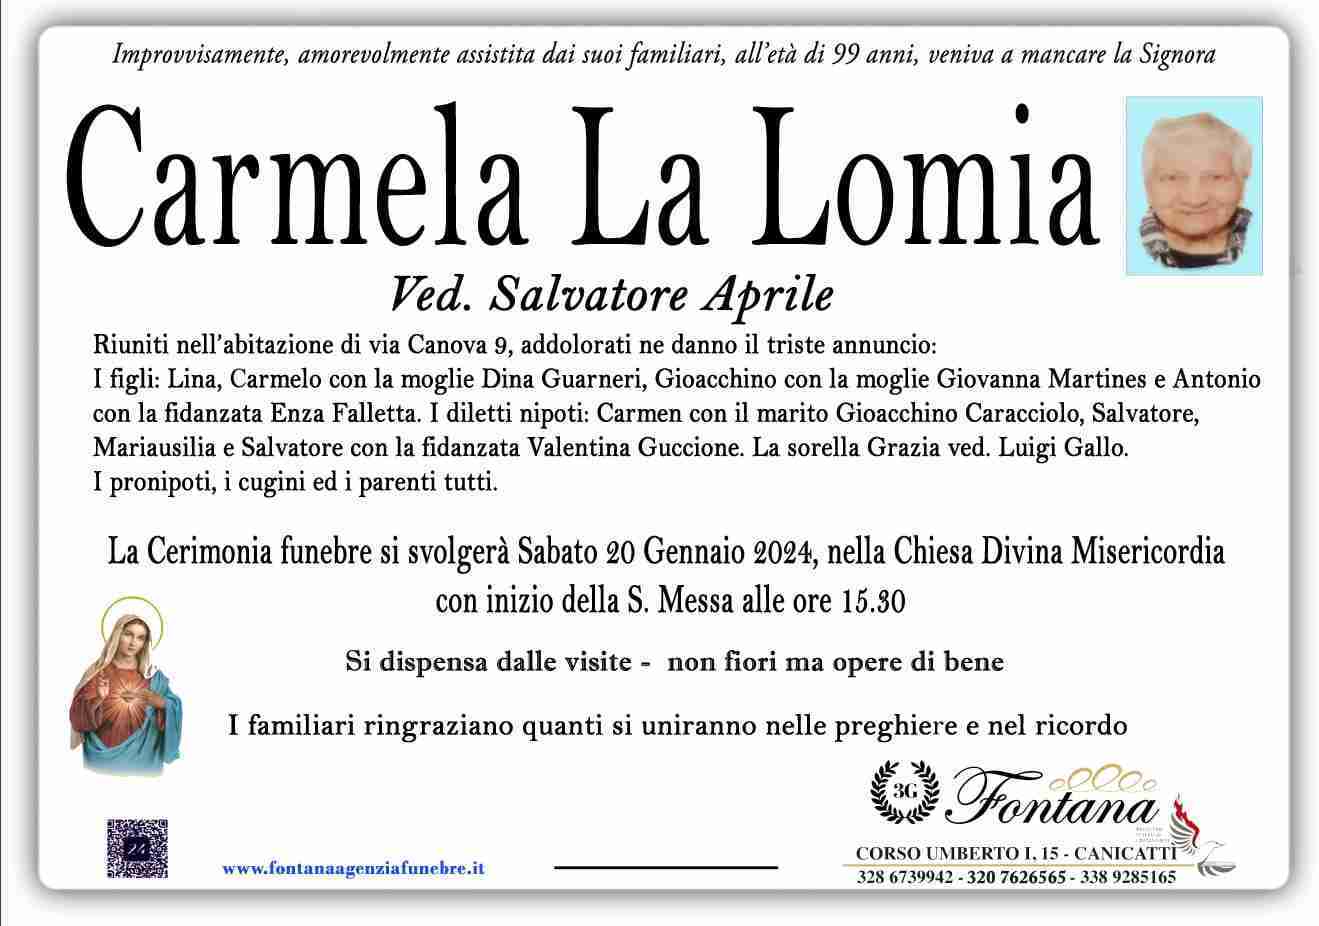 Carmela La Lomia